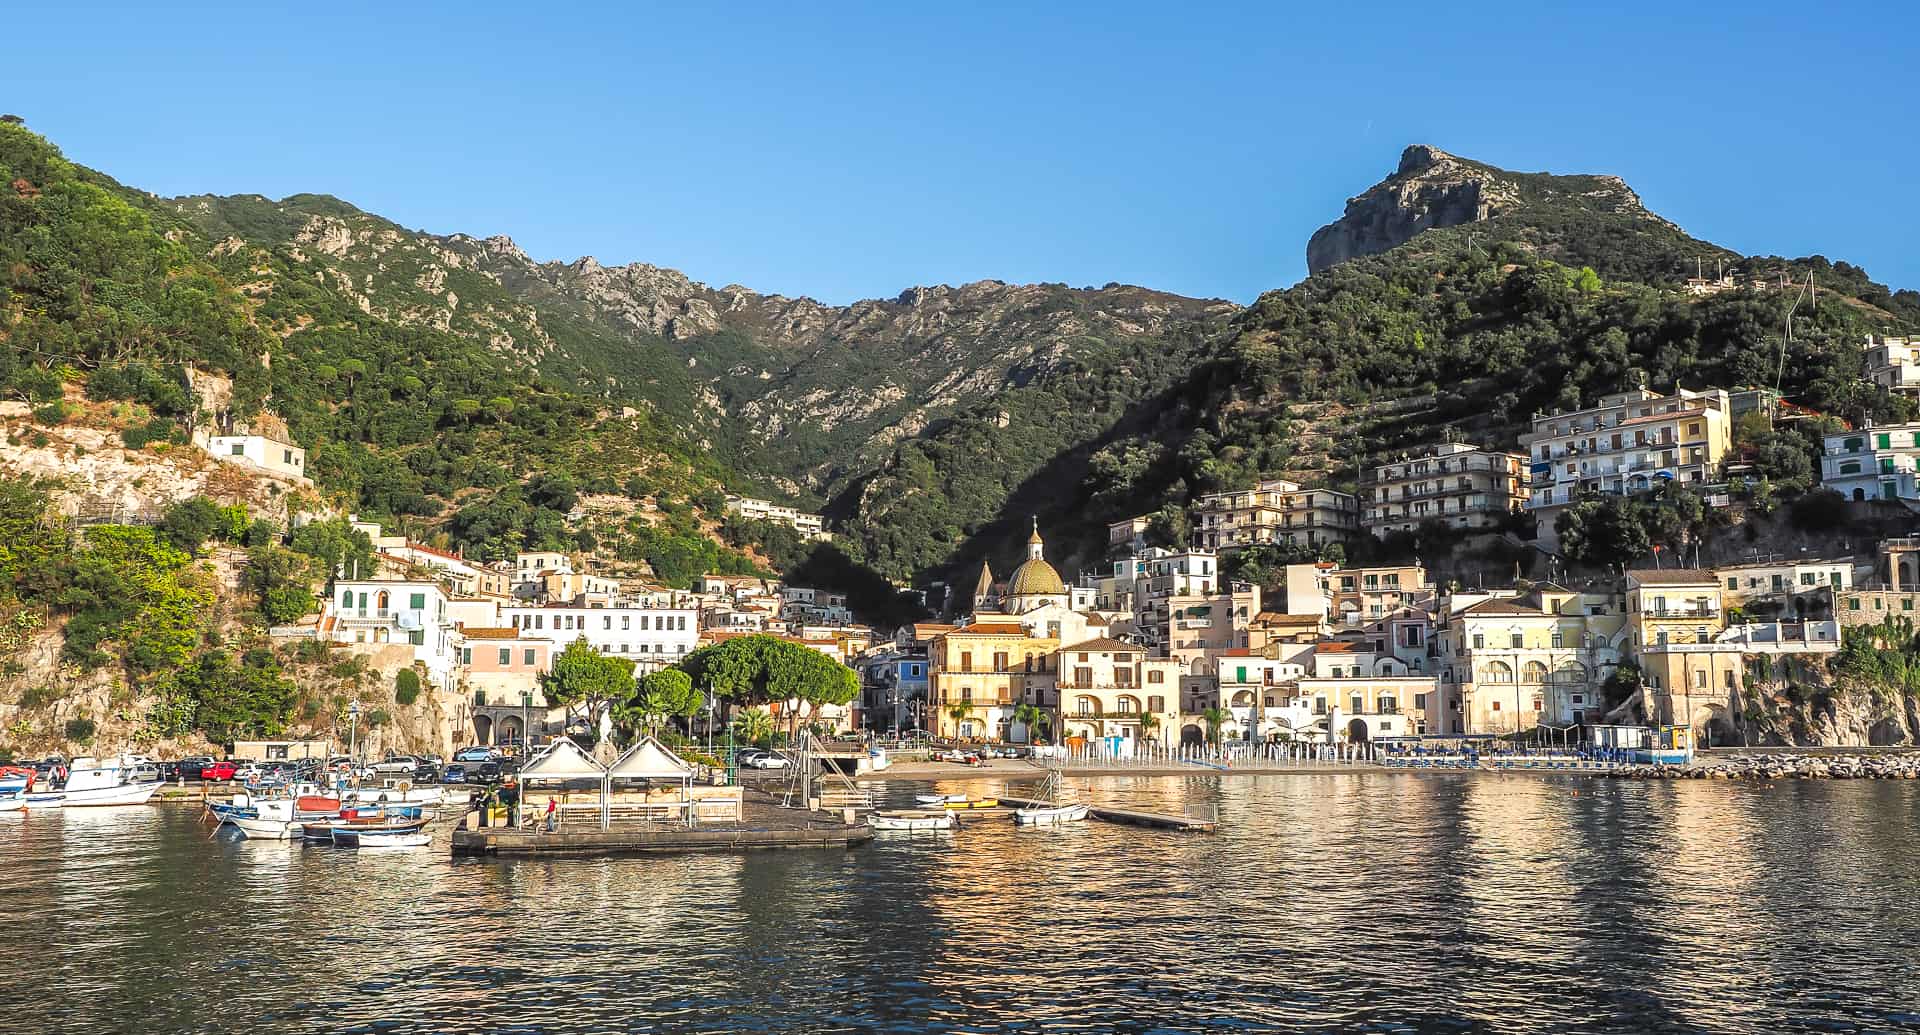 A guide to Cetara, Italy on the Amalfi Coast